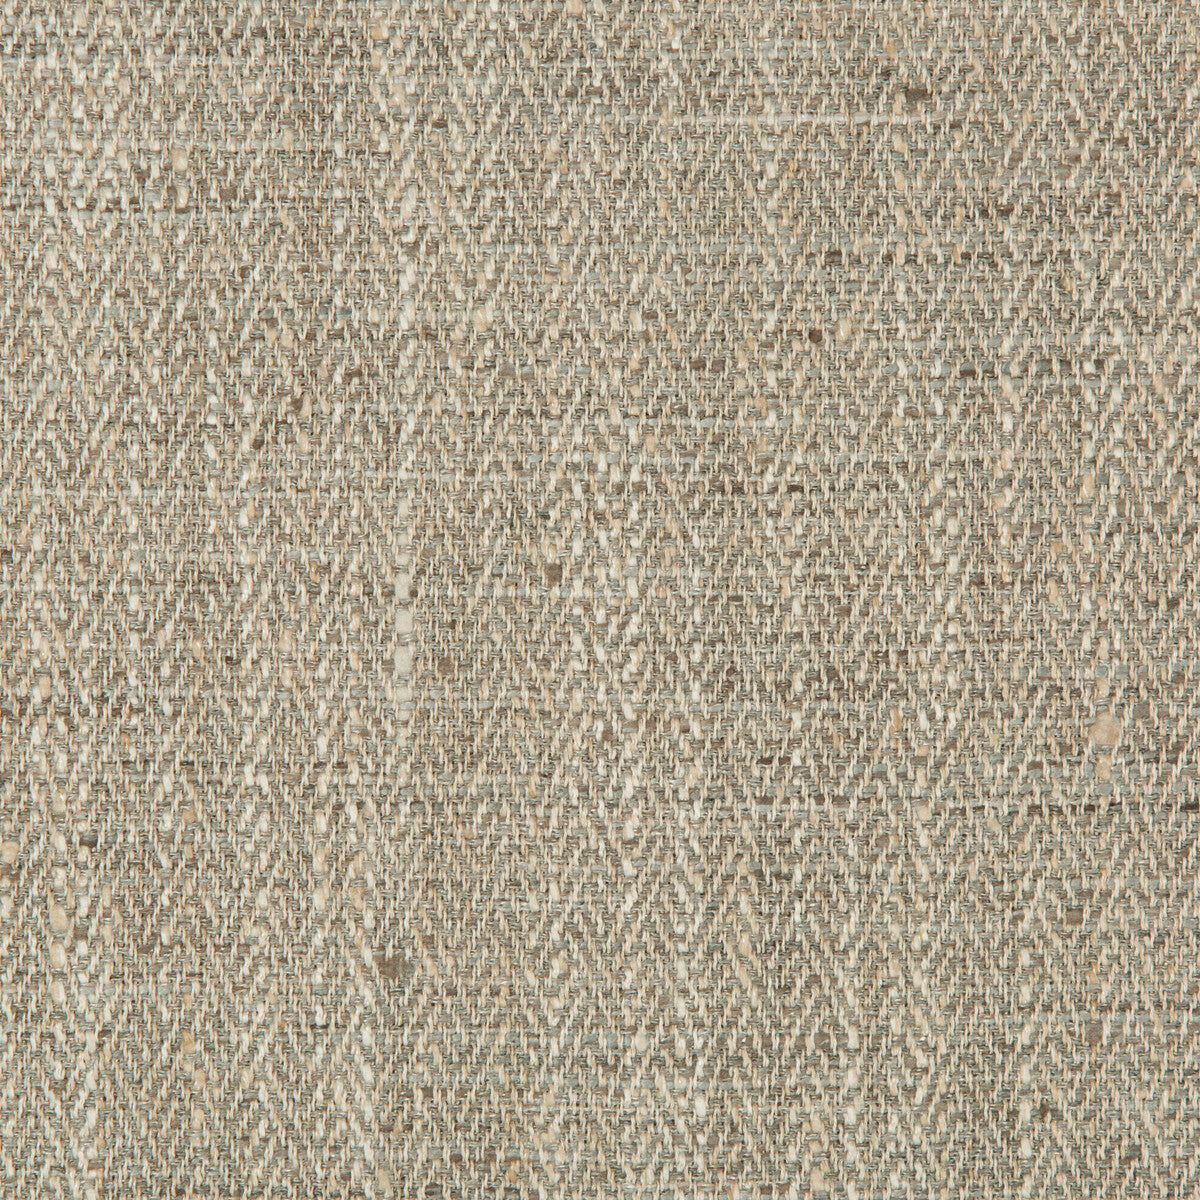 Kravet Basics fabric in 35241-11 color - pattern 35241.11.0 - by Kravet Basics